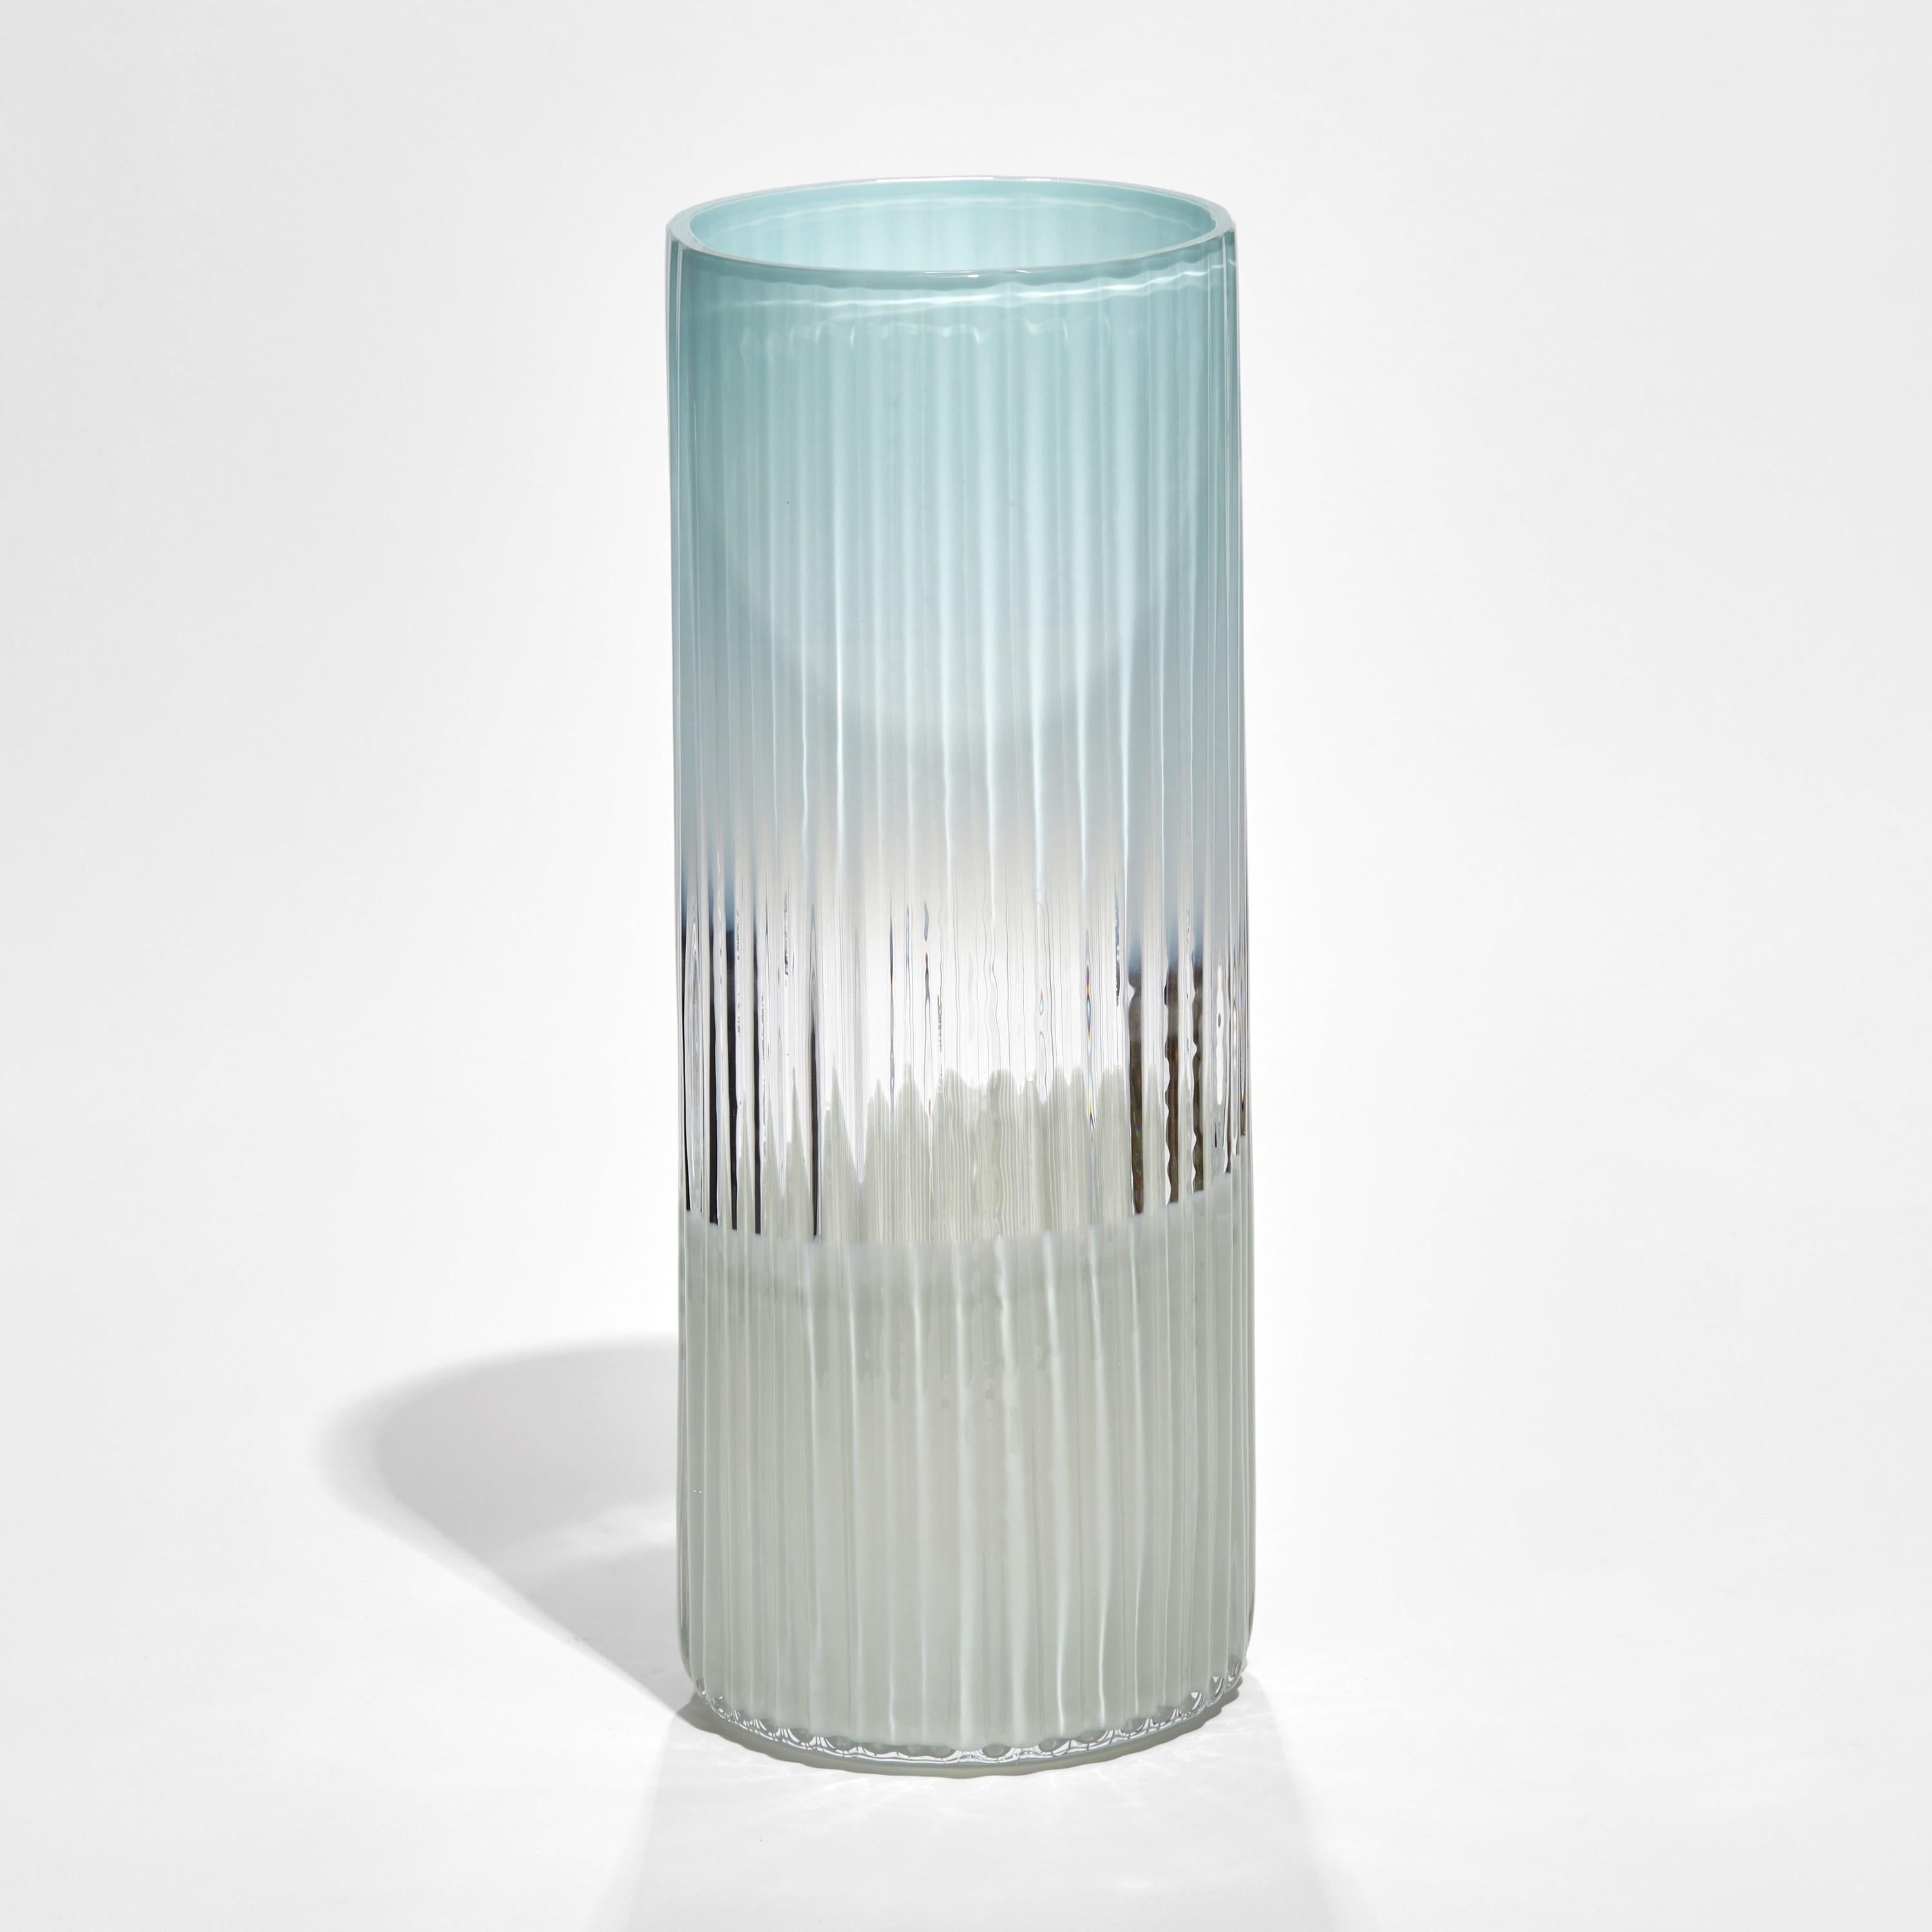 Le vase Plissé en turquoise et céladon est un vase en édition limitée de l'artiste et designer suédoise Lena Bergström.

Créée à l'occasion de 